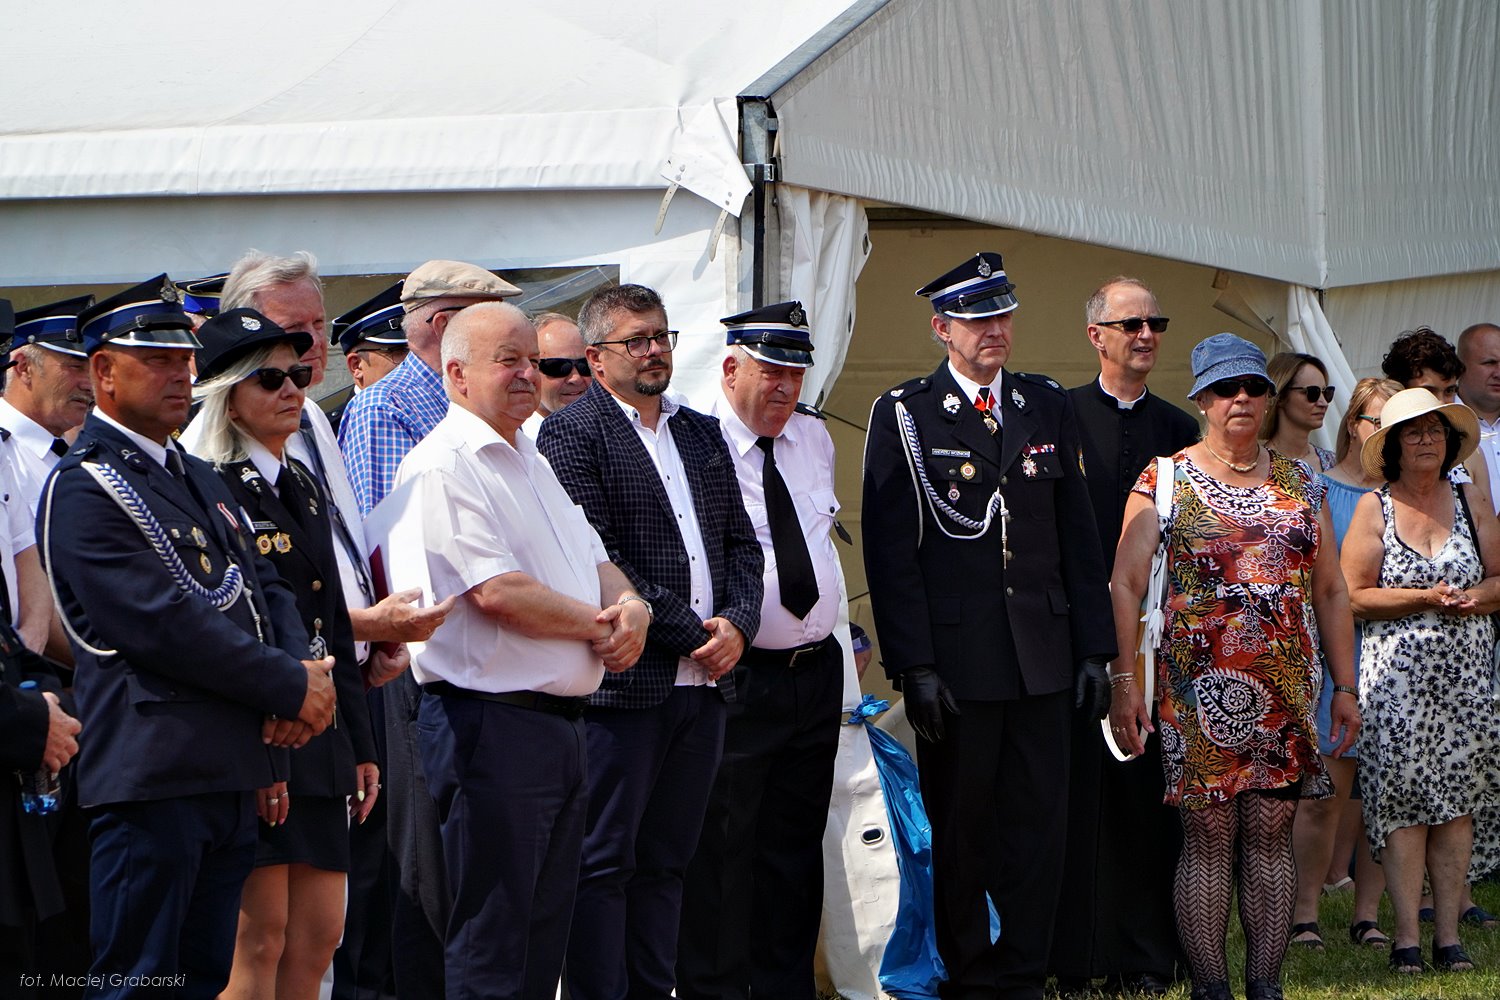 Na olacu przed remizą OSP, stoją zaproszeni goście, Burmistrz Miasta i Gminy Budzyń, Ksiądz Proboszcz, a także mieszkańcy sołectwa Sokołowo Budzyńskie.